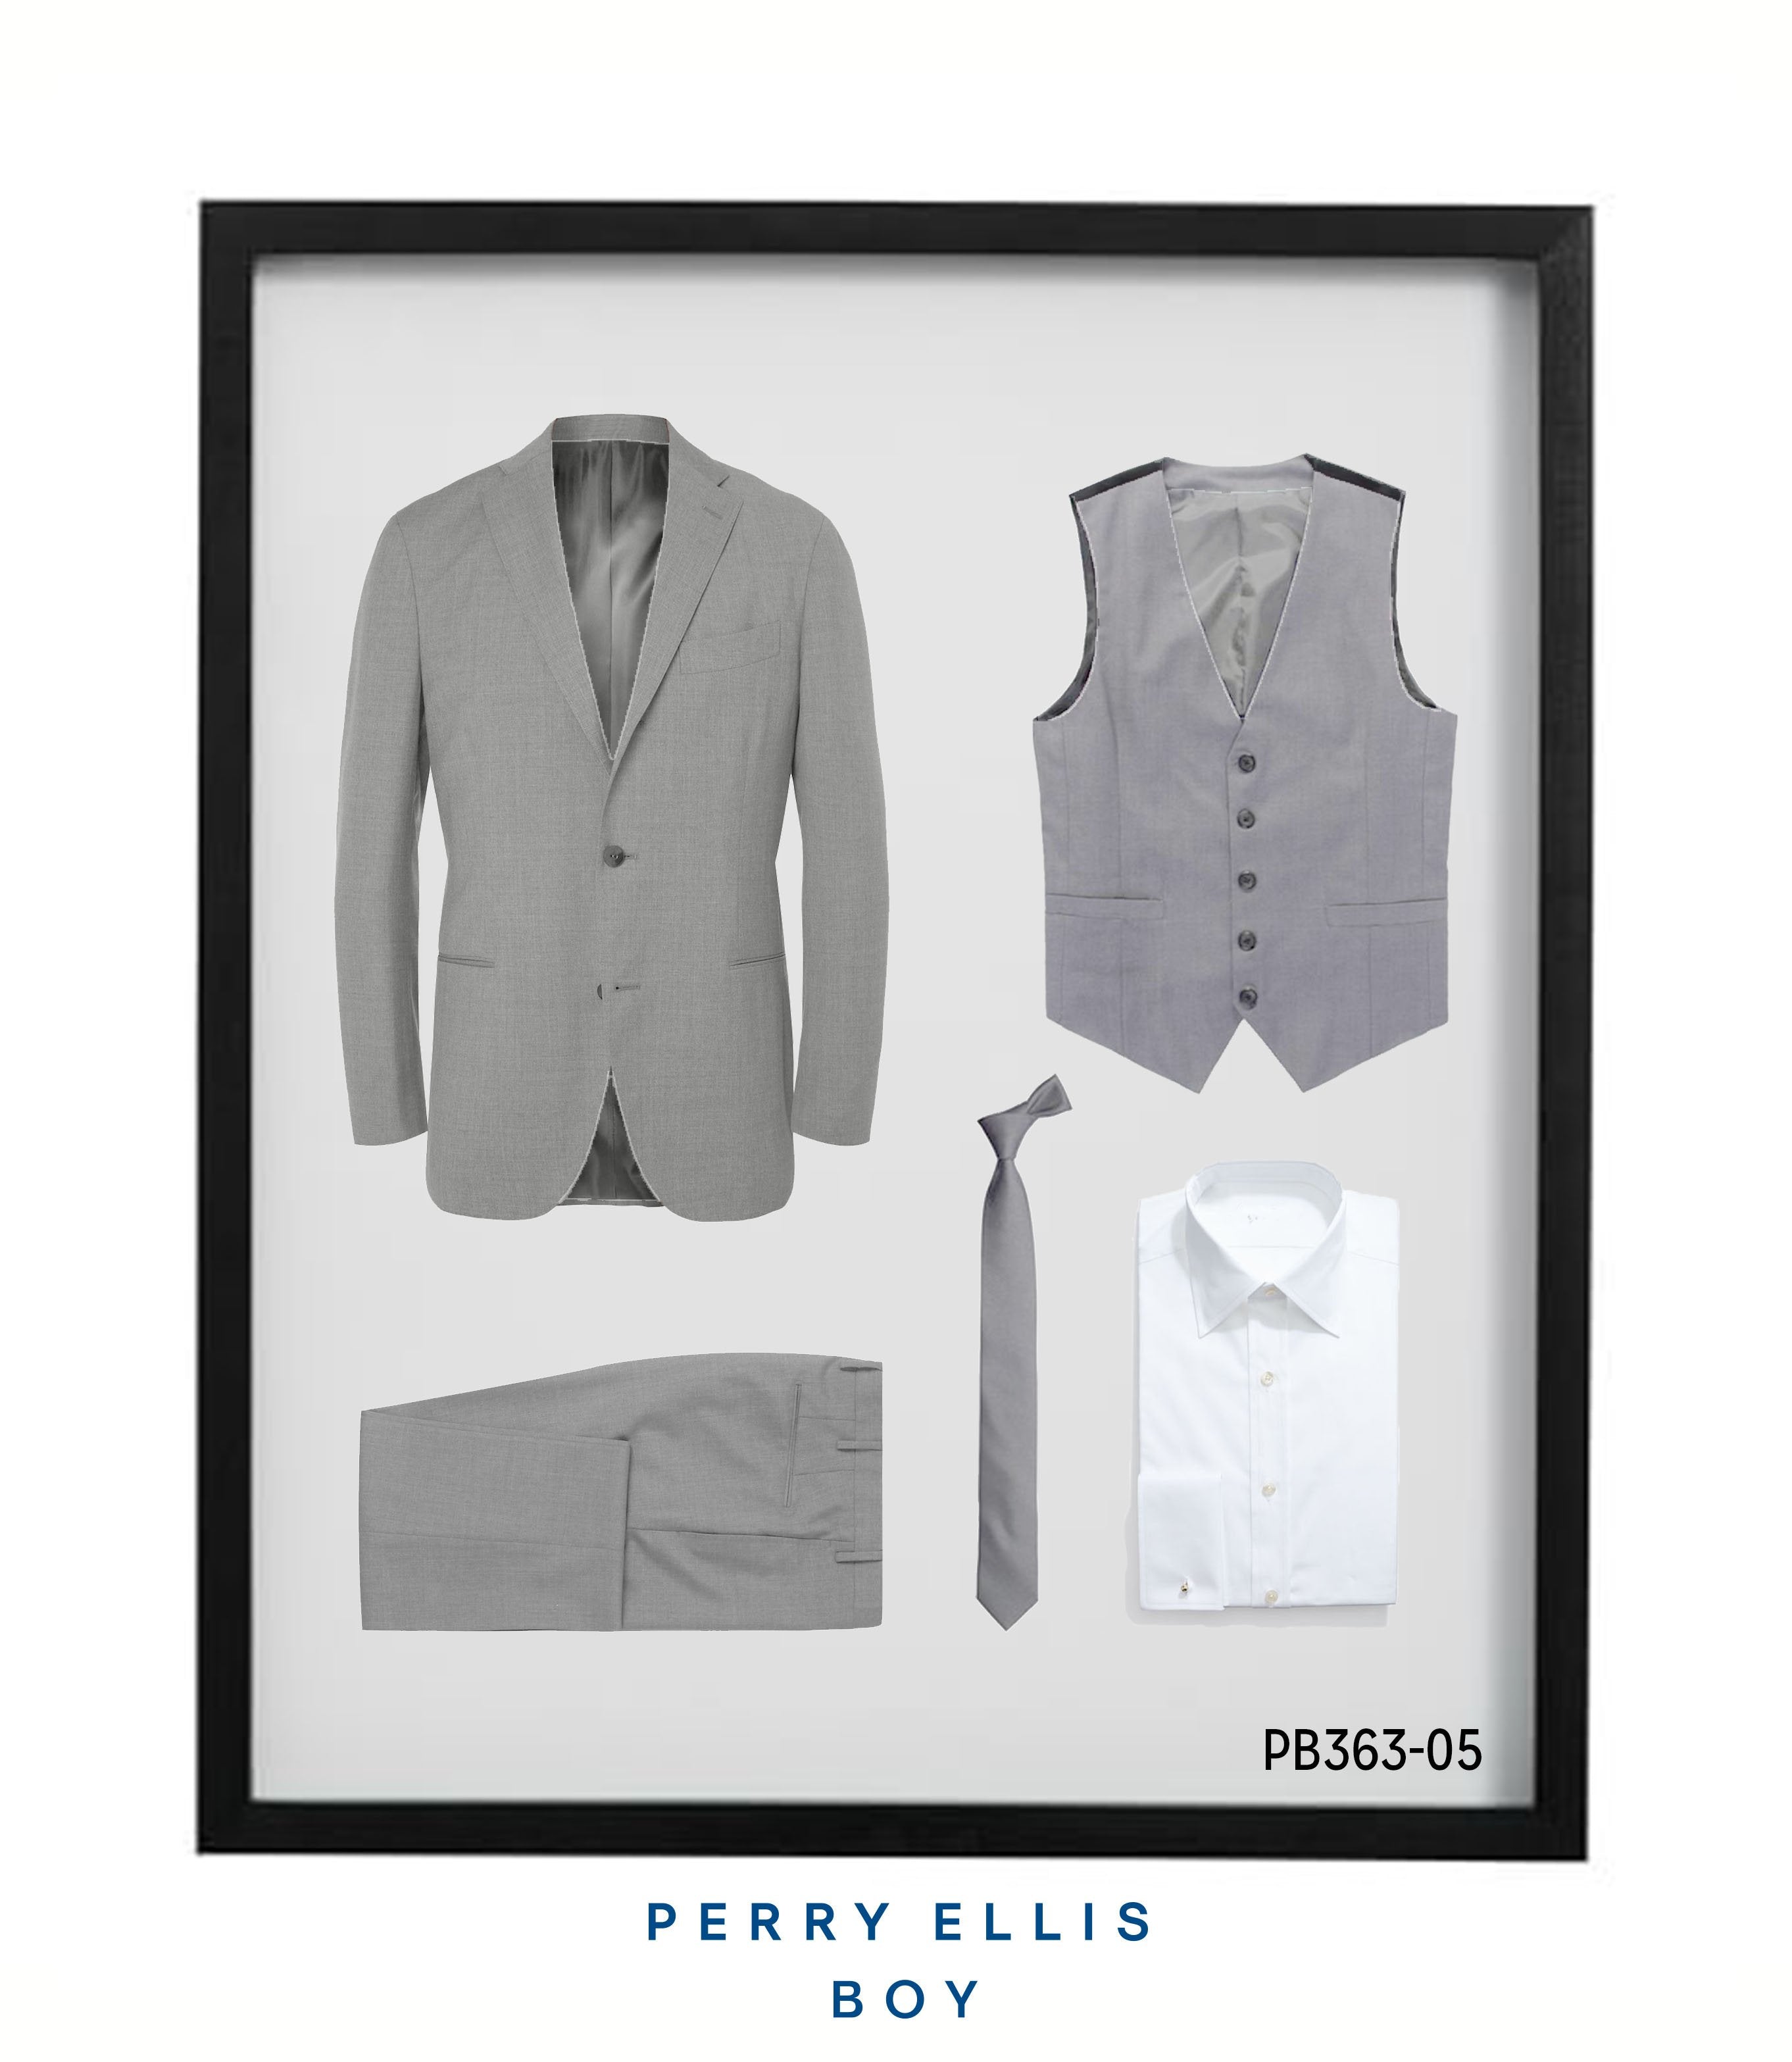 Perry Ellis Boys Suit Lt Grey Suits For Boy's